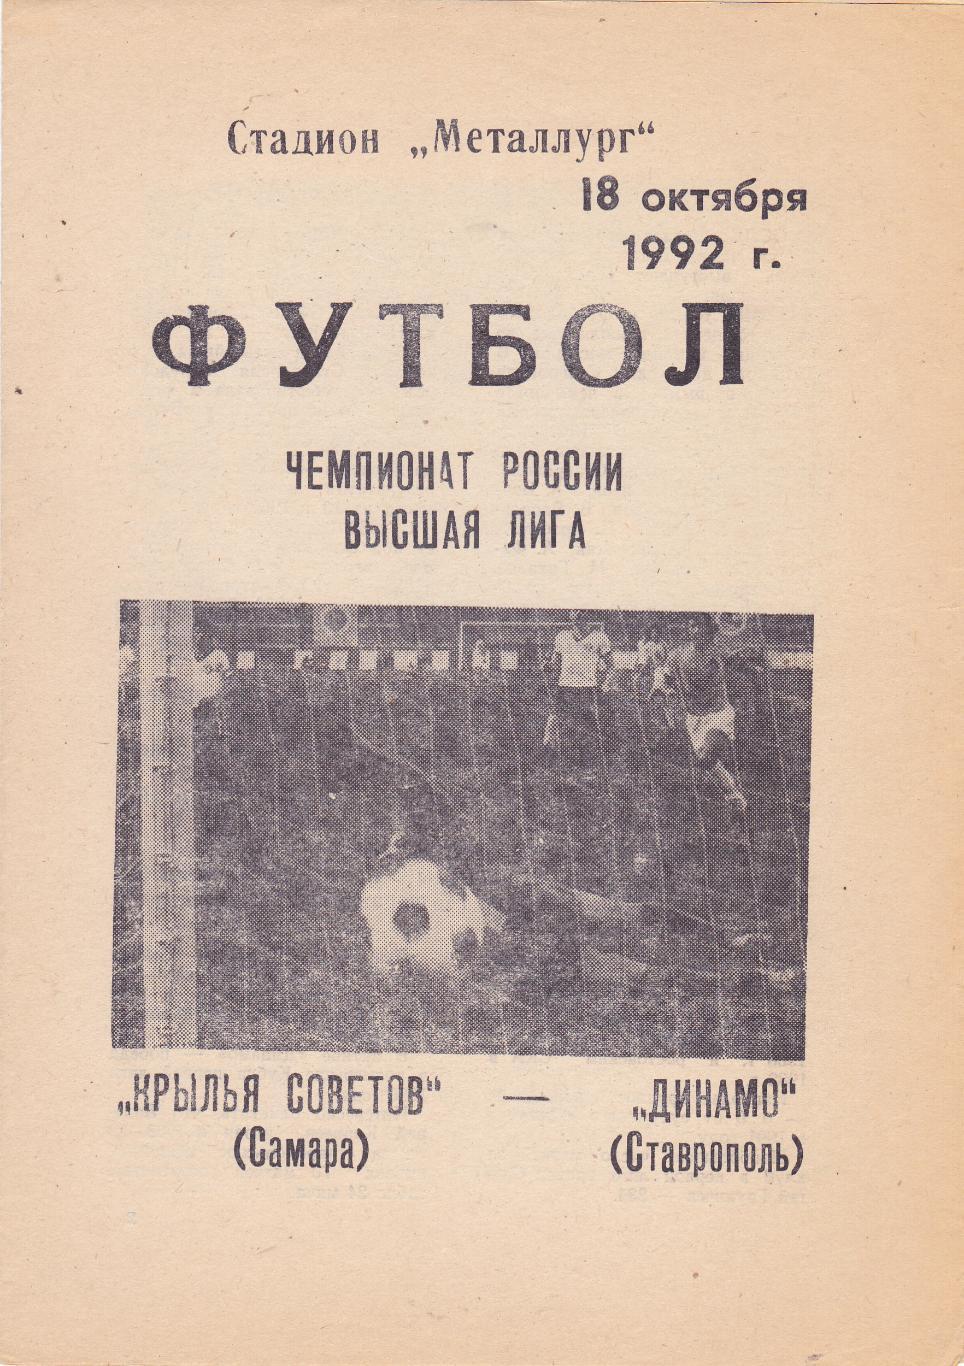 Крылья Советов (Самара) - Динамо (Ставрополь) 18.10.1992